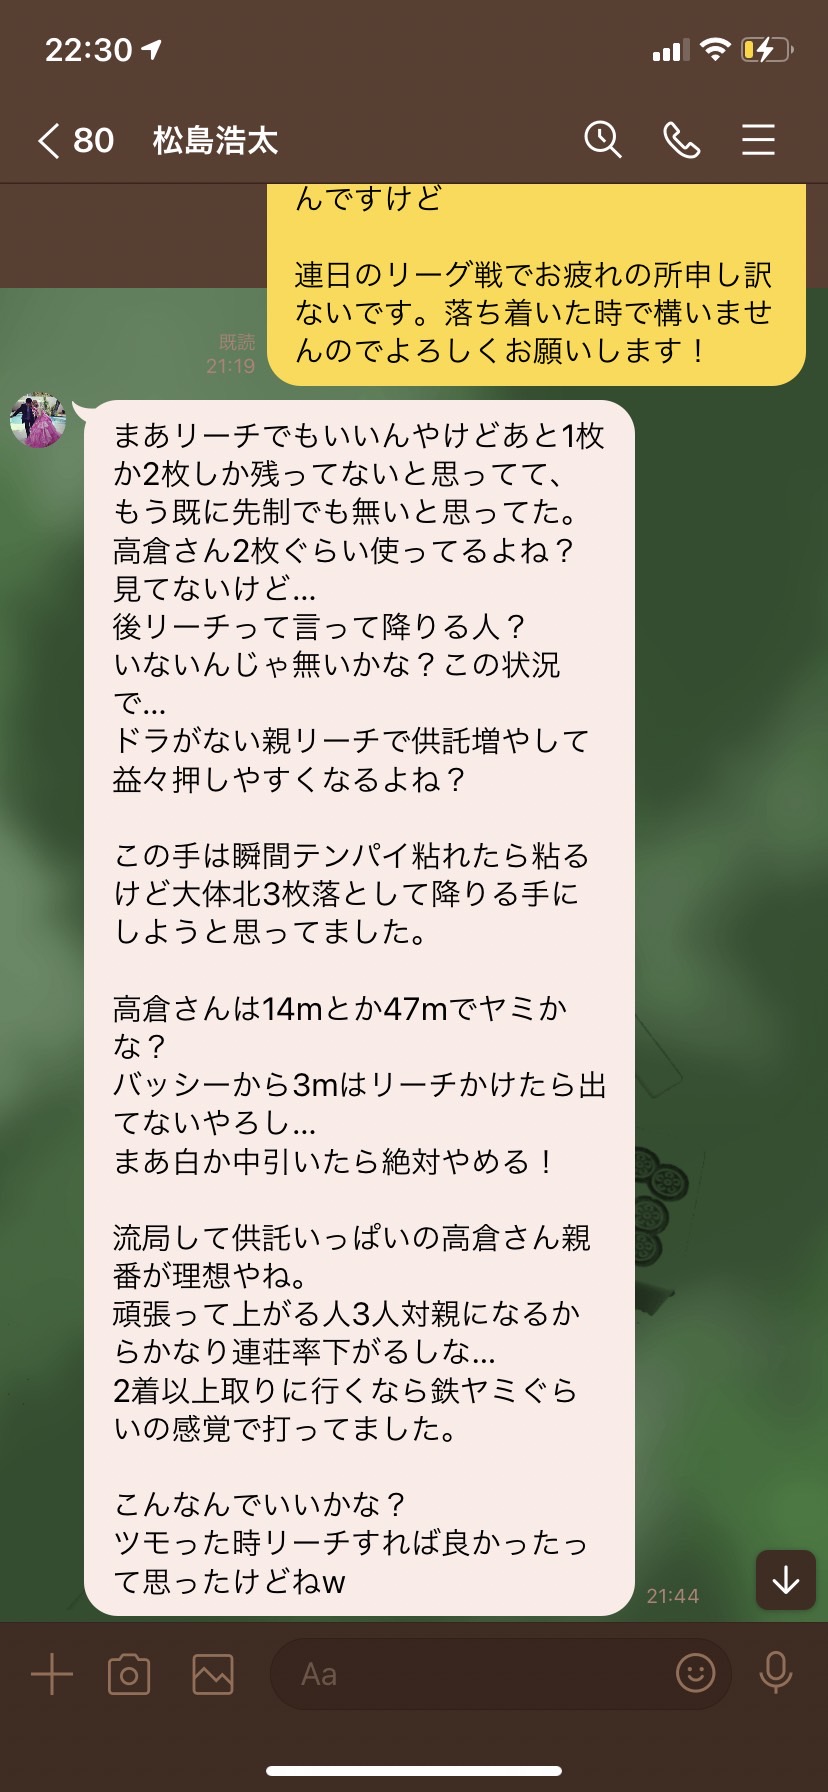 Faces Vol 35 松島浩太 去年の忘れ物を獲りに 九州本部のエースは今年もa1を目指し冒険の旅へと 最高位戦日本プロ麻雀協会